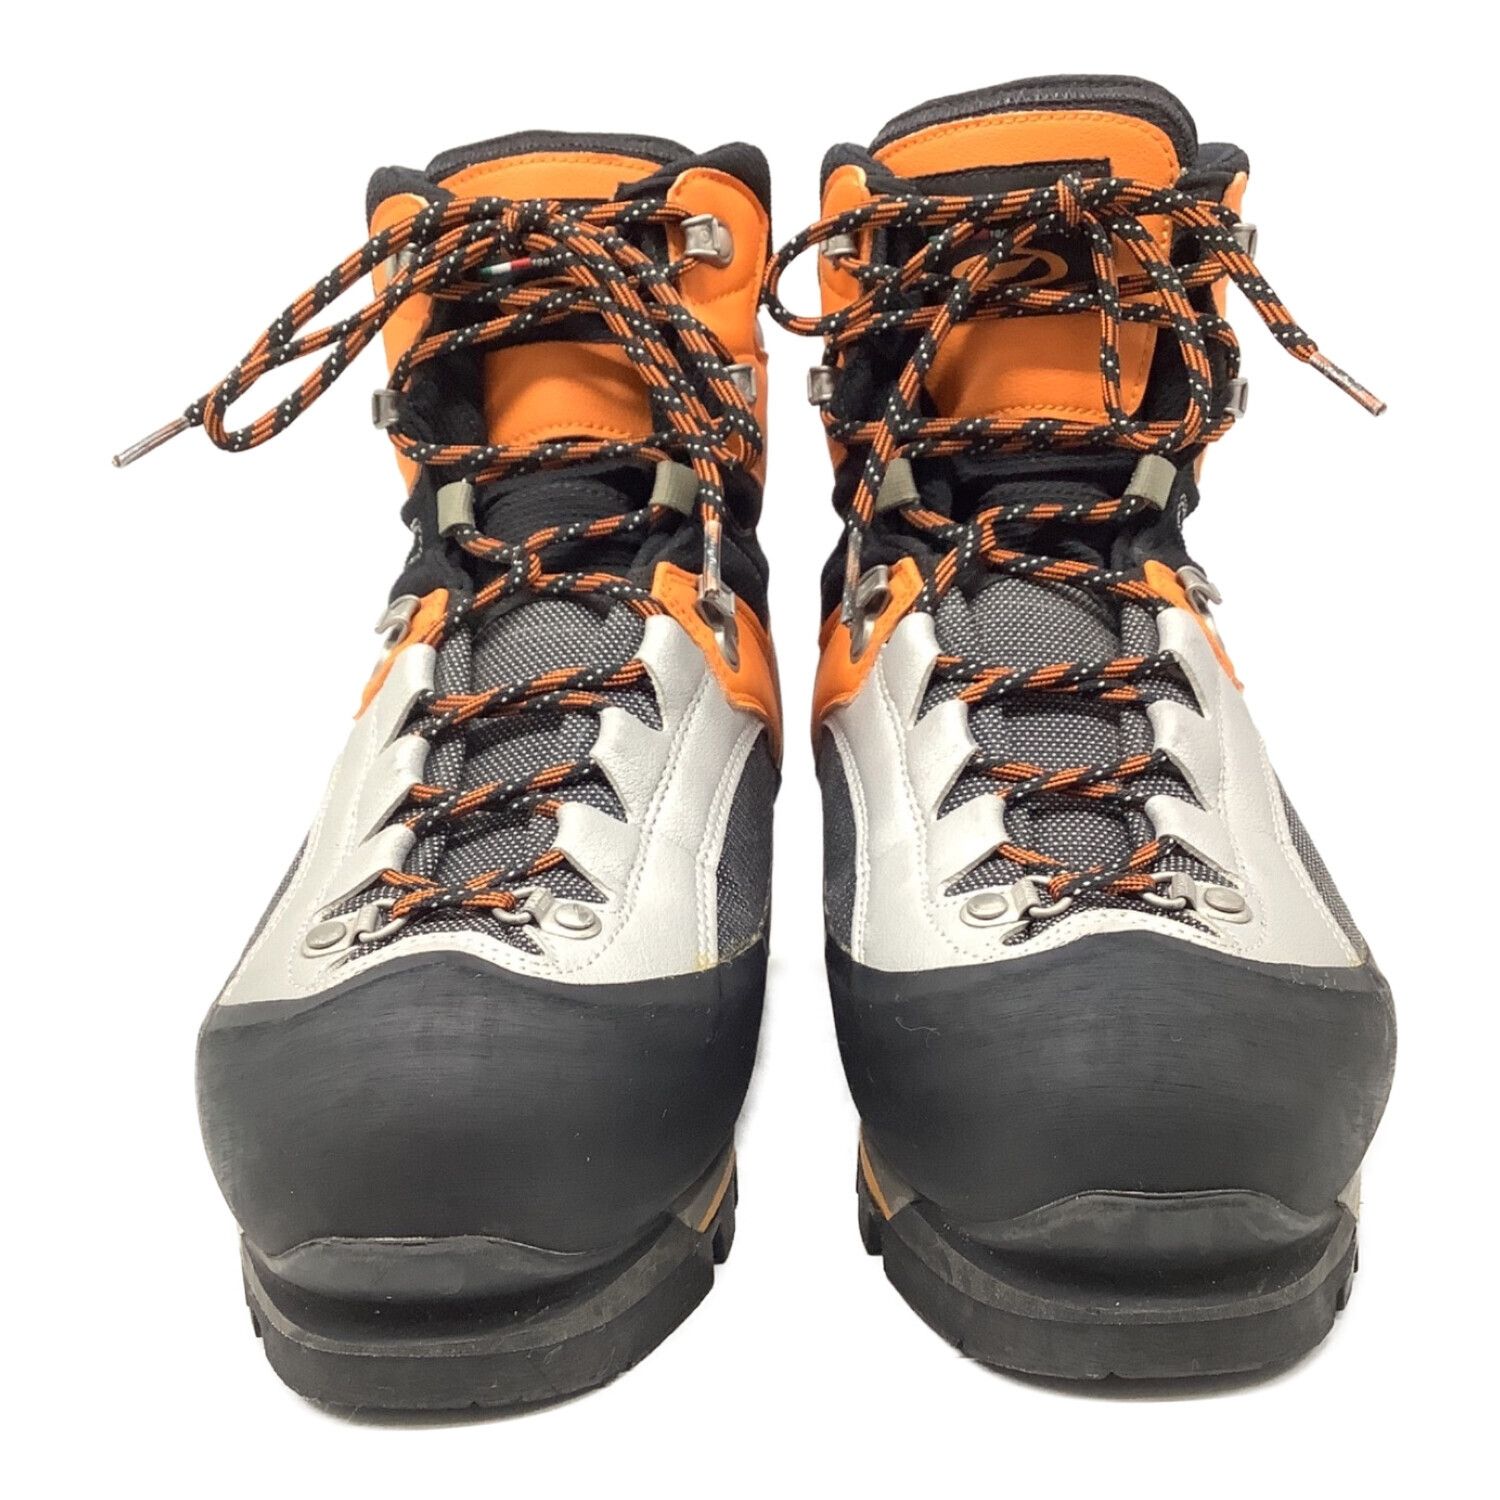 イタリア製スカルパの登山靴 - 登山用品